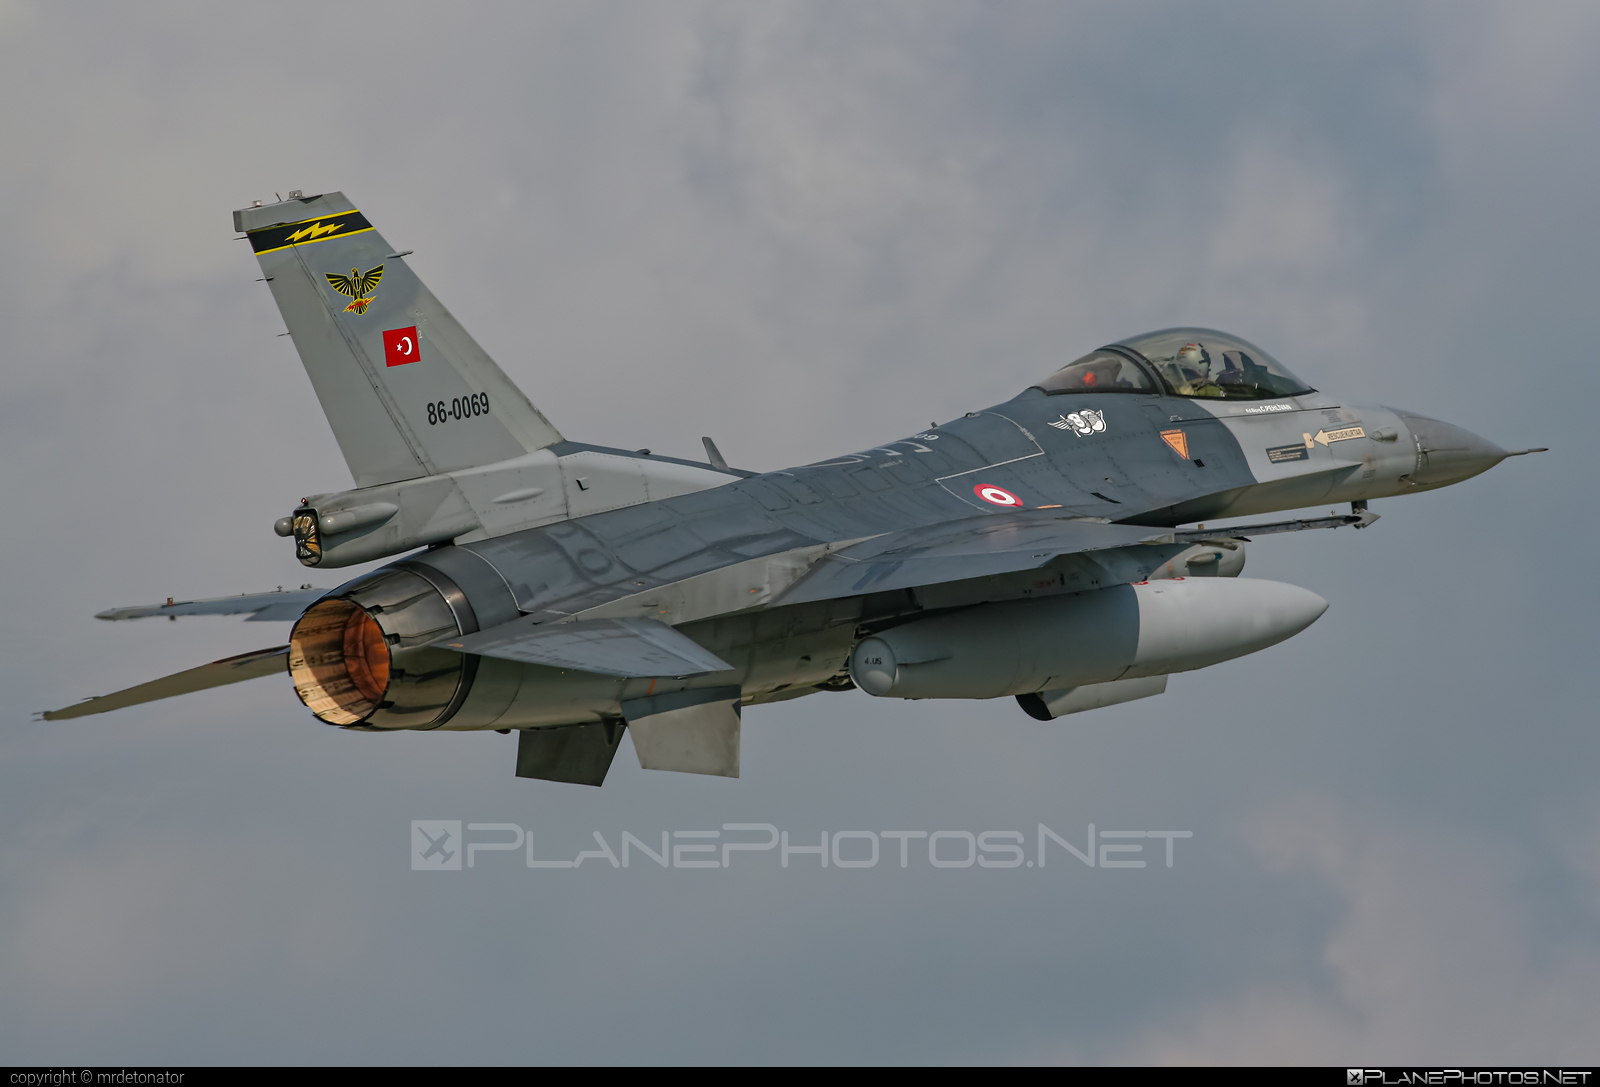 TAI F-16C Fighting Falcon - 86-0069 operated by Türk Hava Kuvvetleri (Turkish Air Force) #TurkHavaKuvvetleri #f16 #f16c #fightingfalcon #turkishairforce